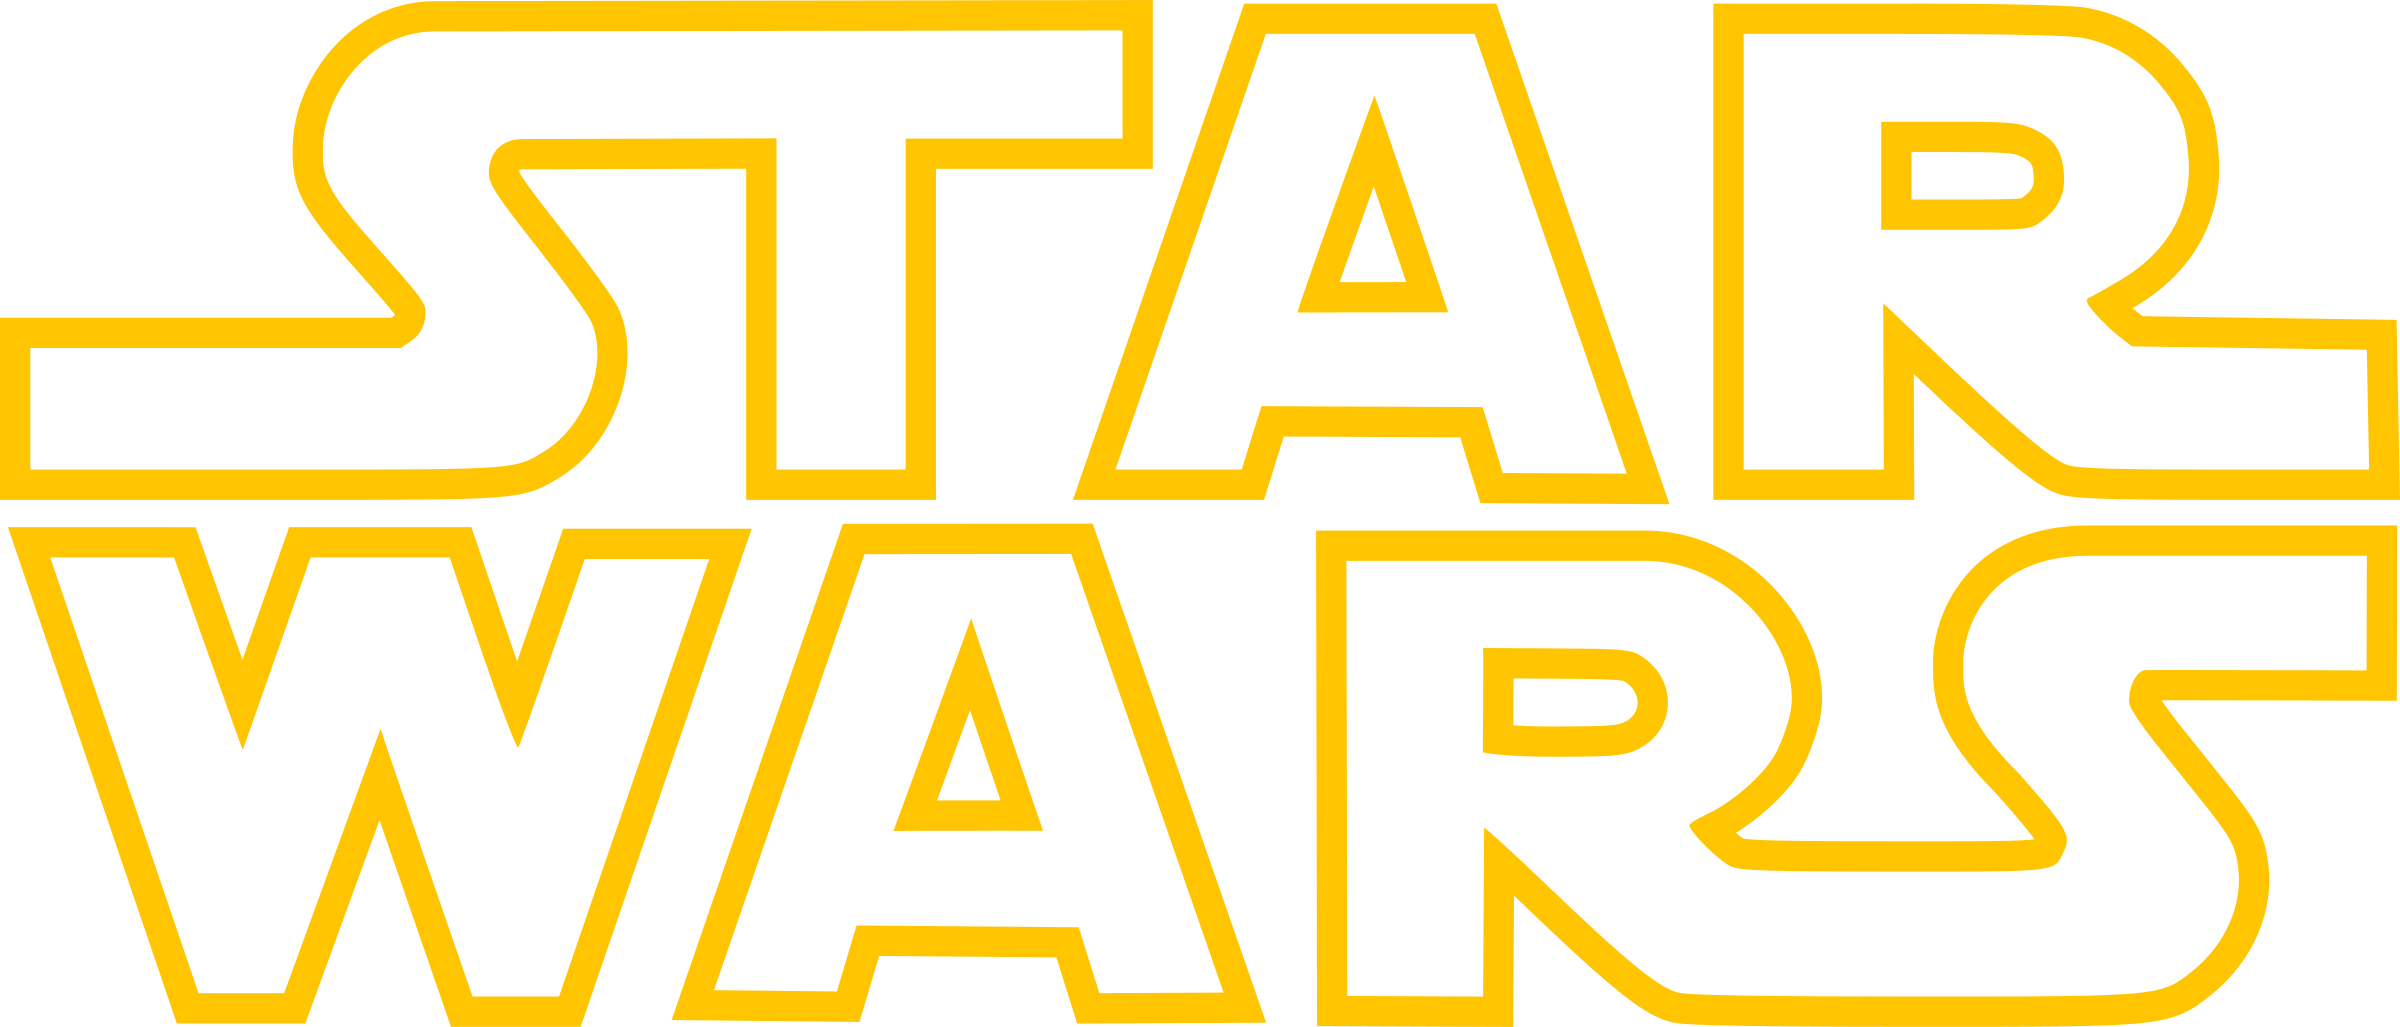 Star Wars Logo Png Transparent - Star Wars Logo Outline Clipart (2400x1027), Png Download